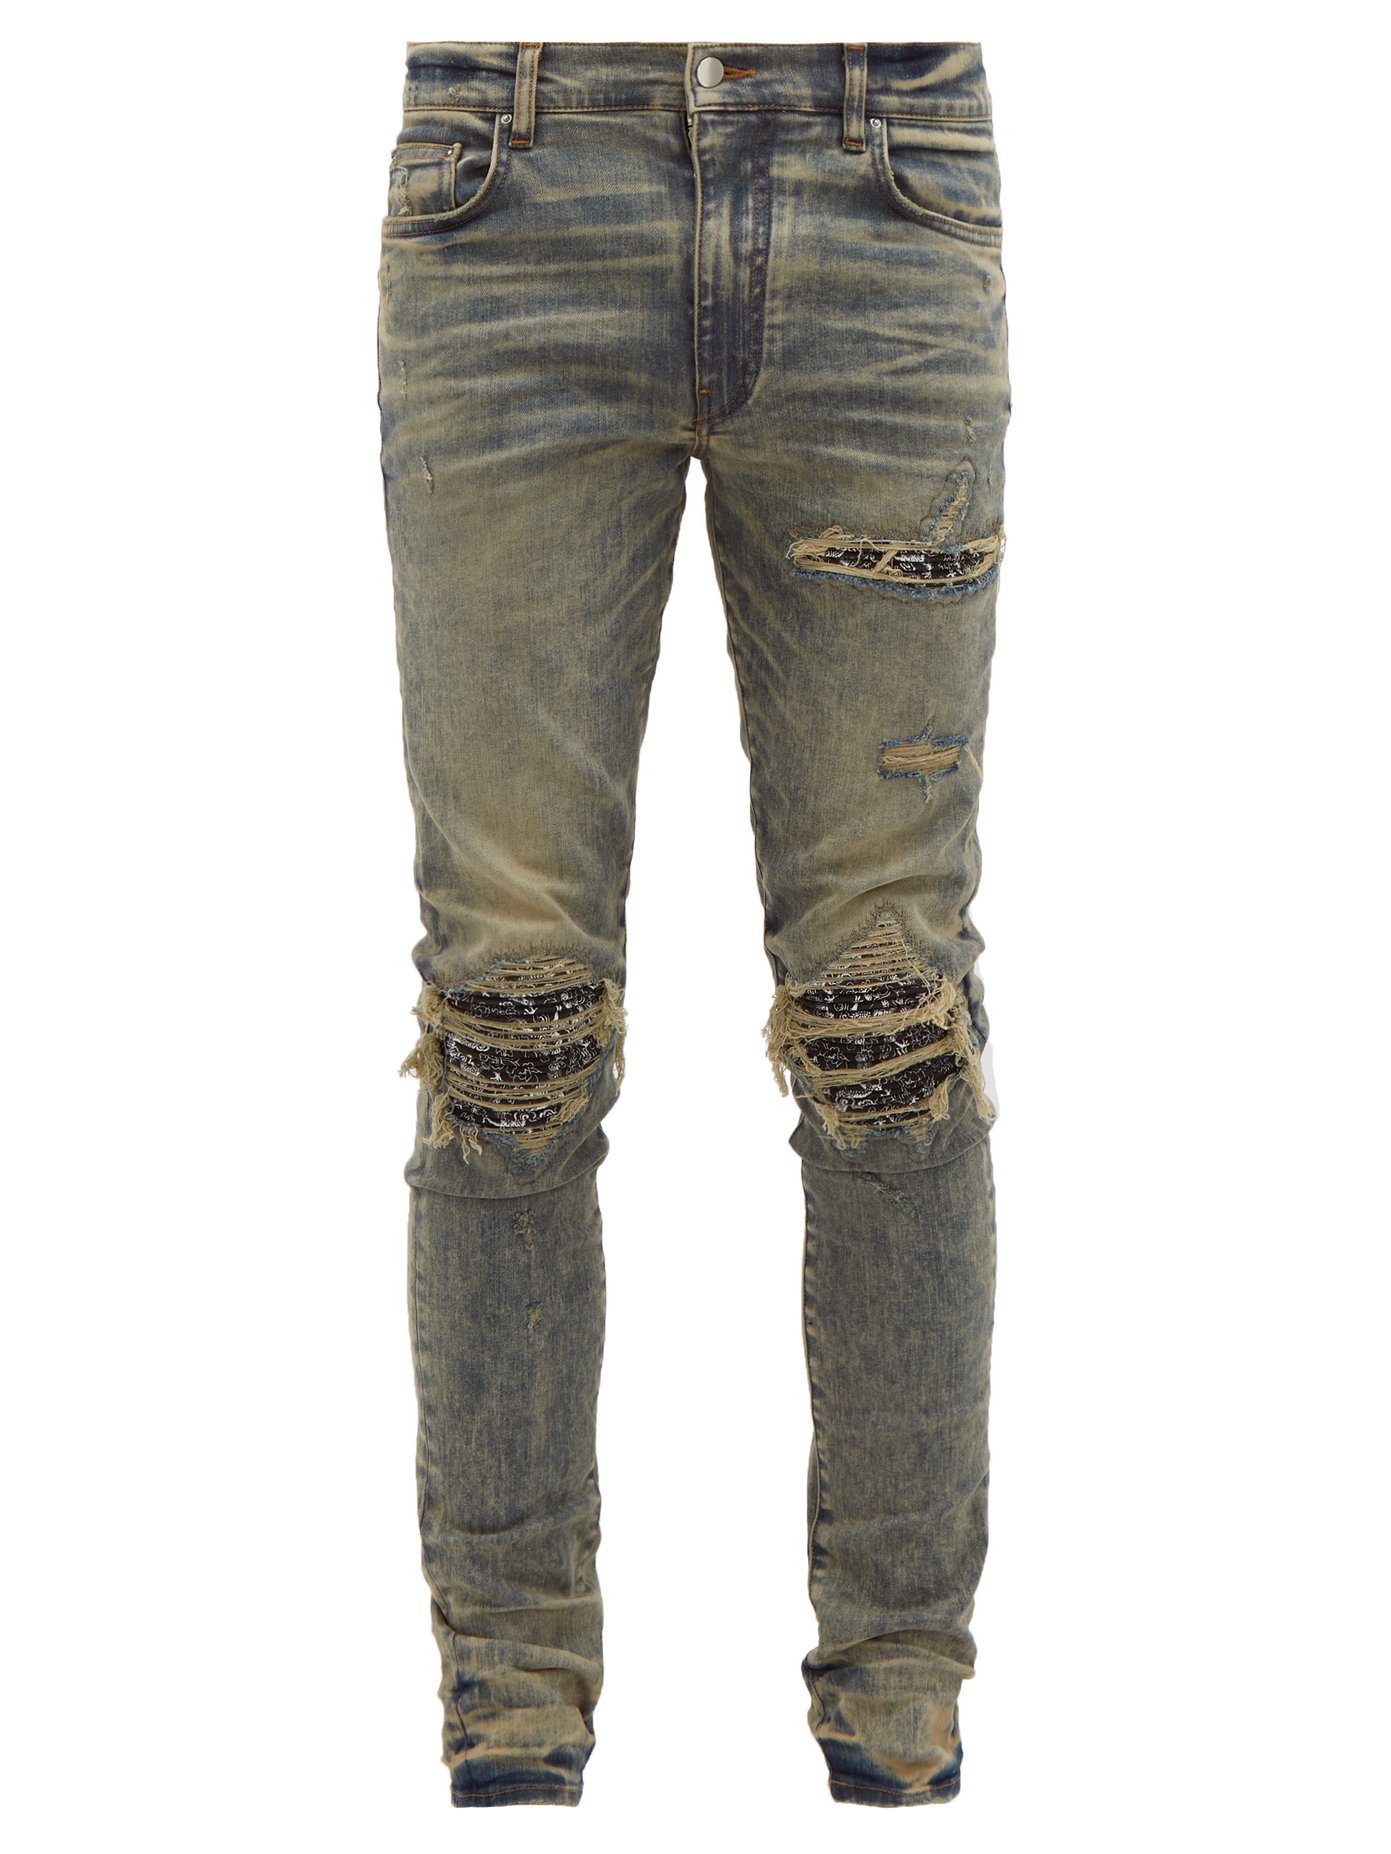 gap 1969 jeans bootcut